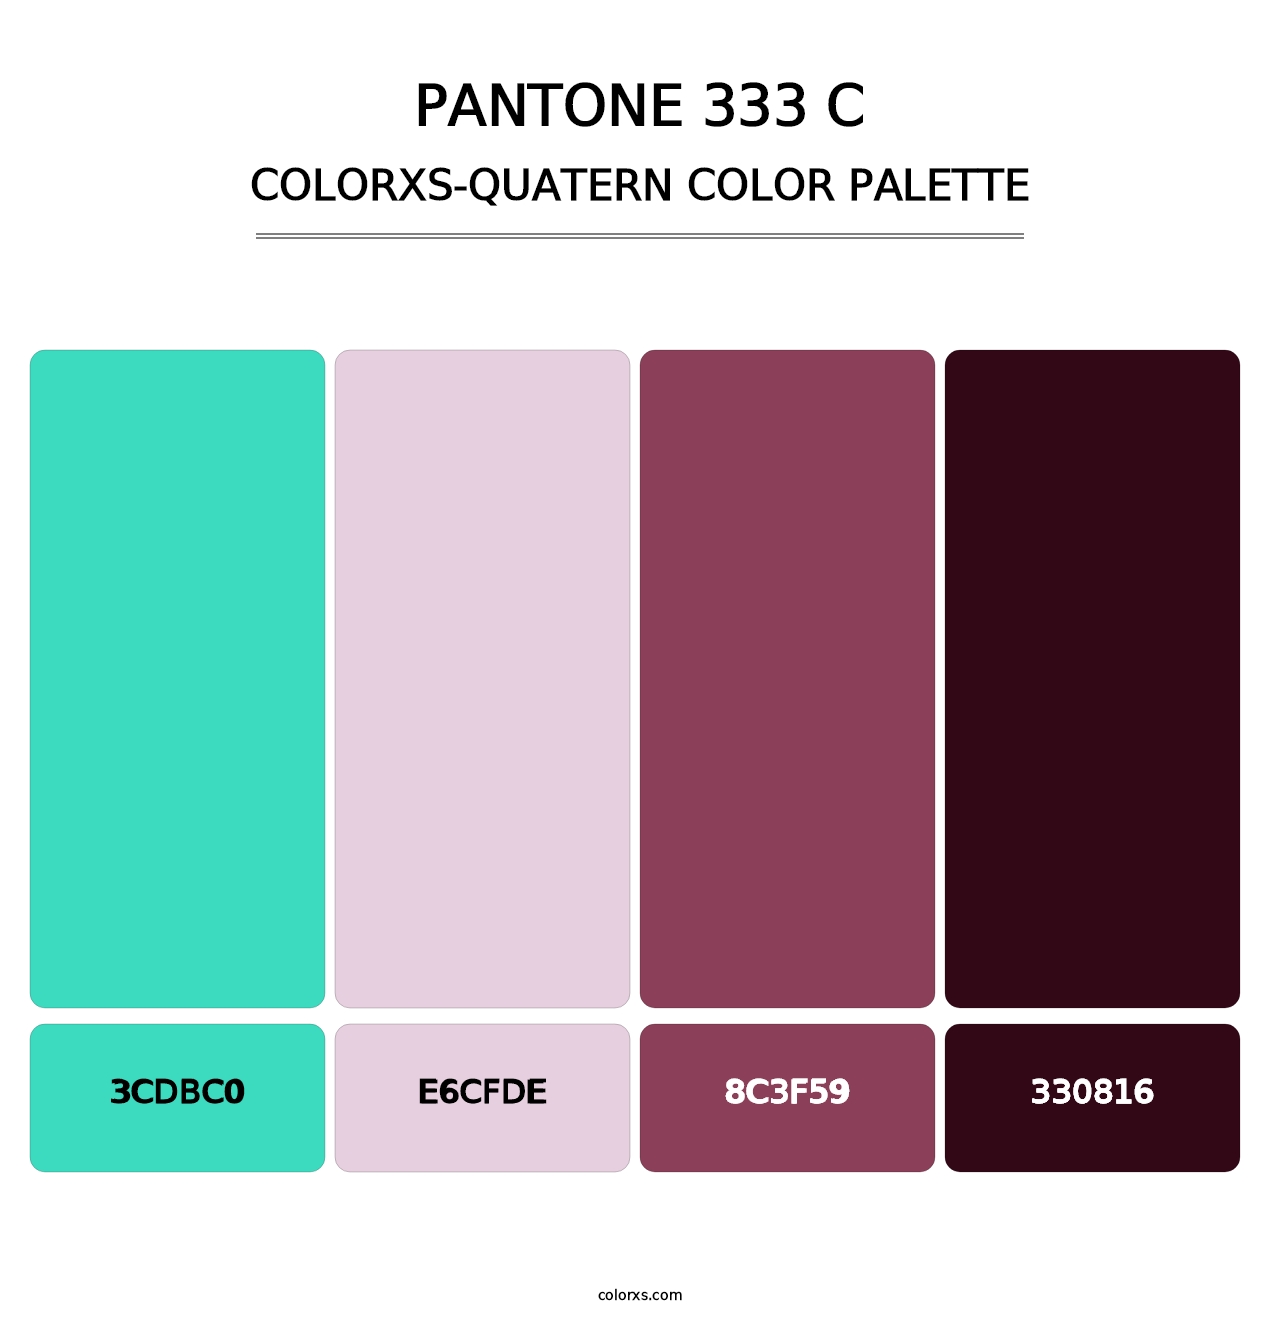 PANTONE 333 C - Colorxs Quatern Palette